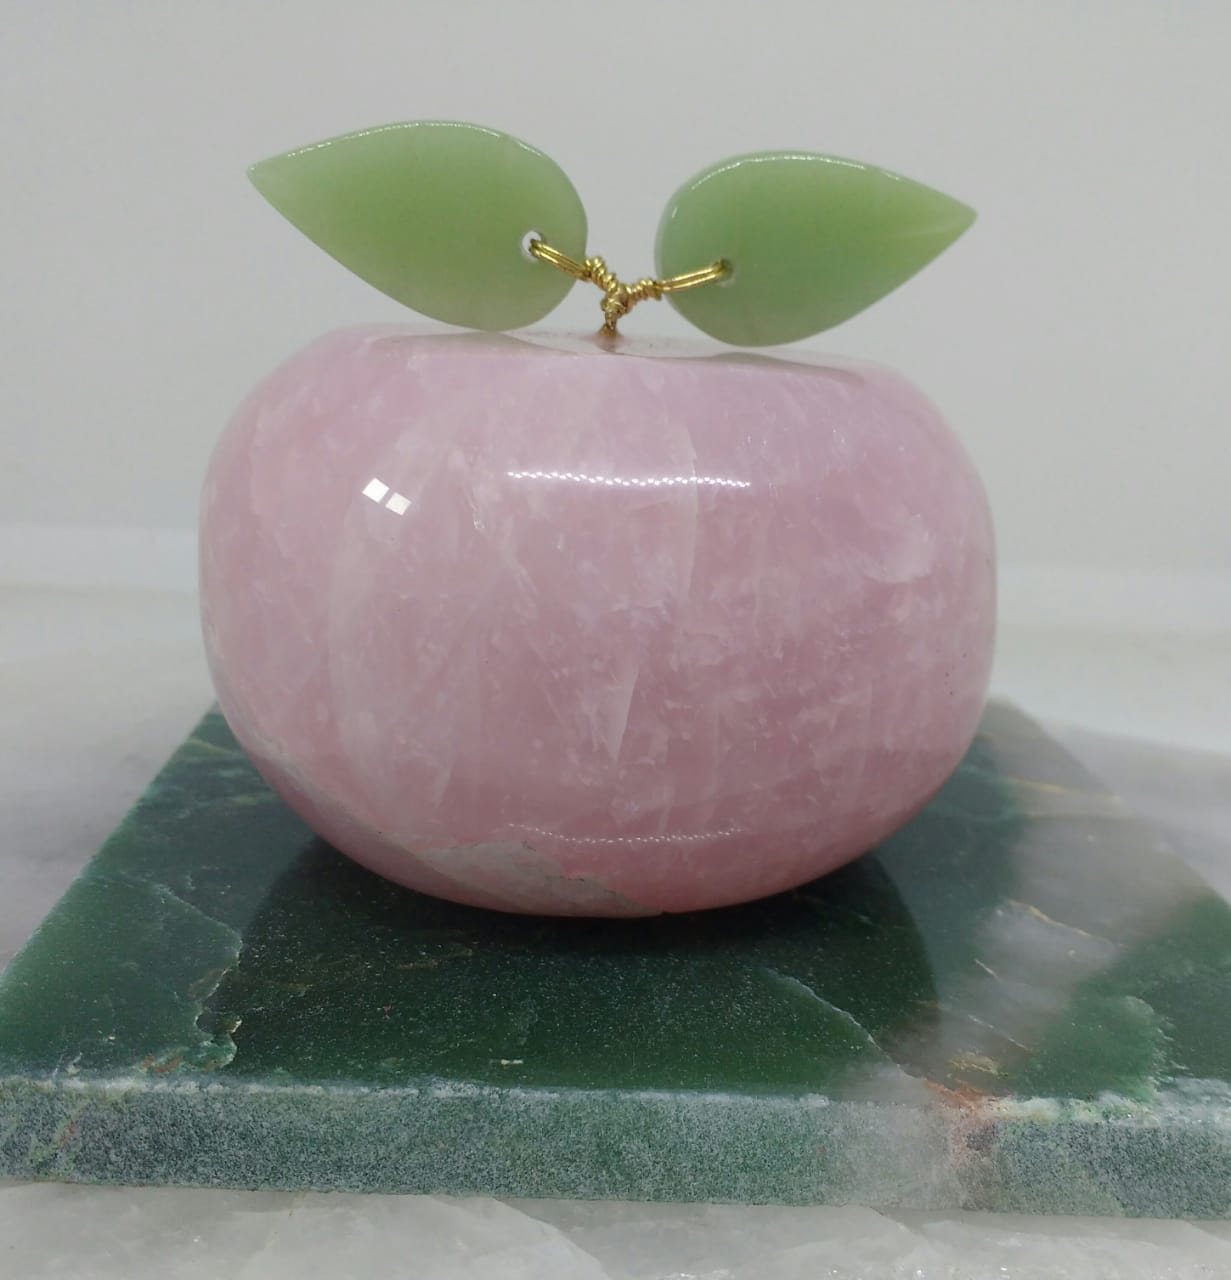 Stones from Uruguay - Rose Quartz Carving Apple for Decoration - Rose Quartz Carving Apple for Decoration & Home, Rose Quartz Carving Apples 